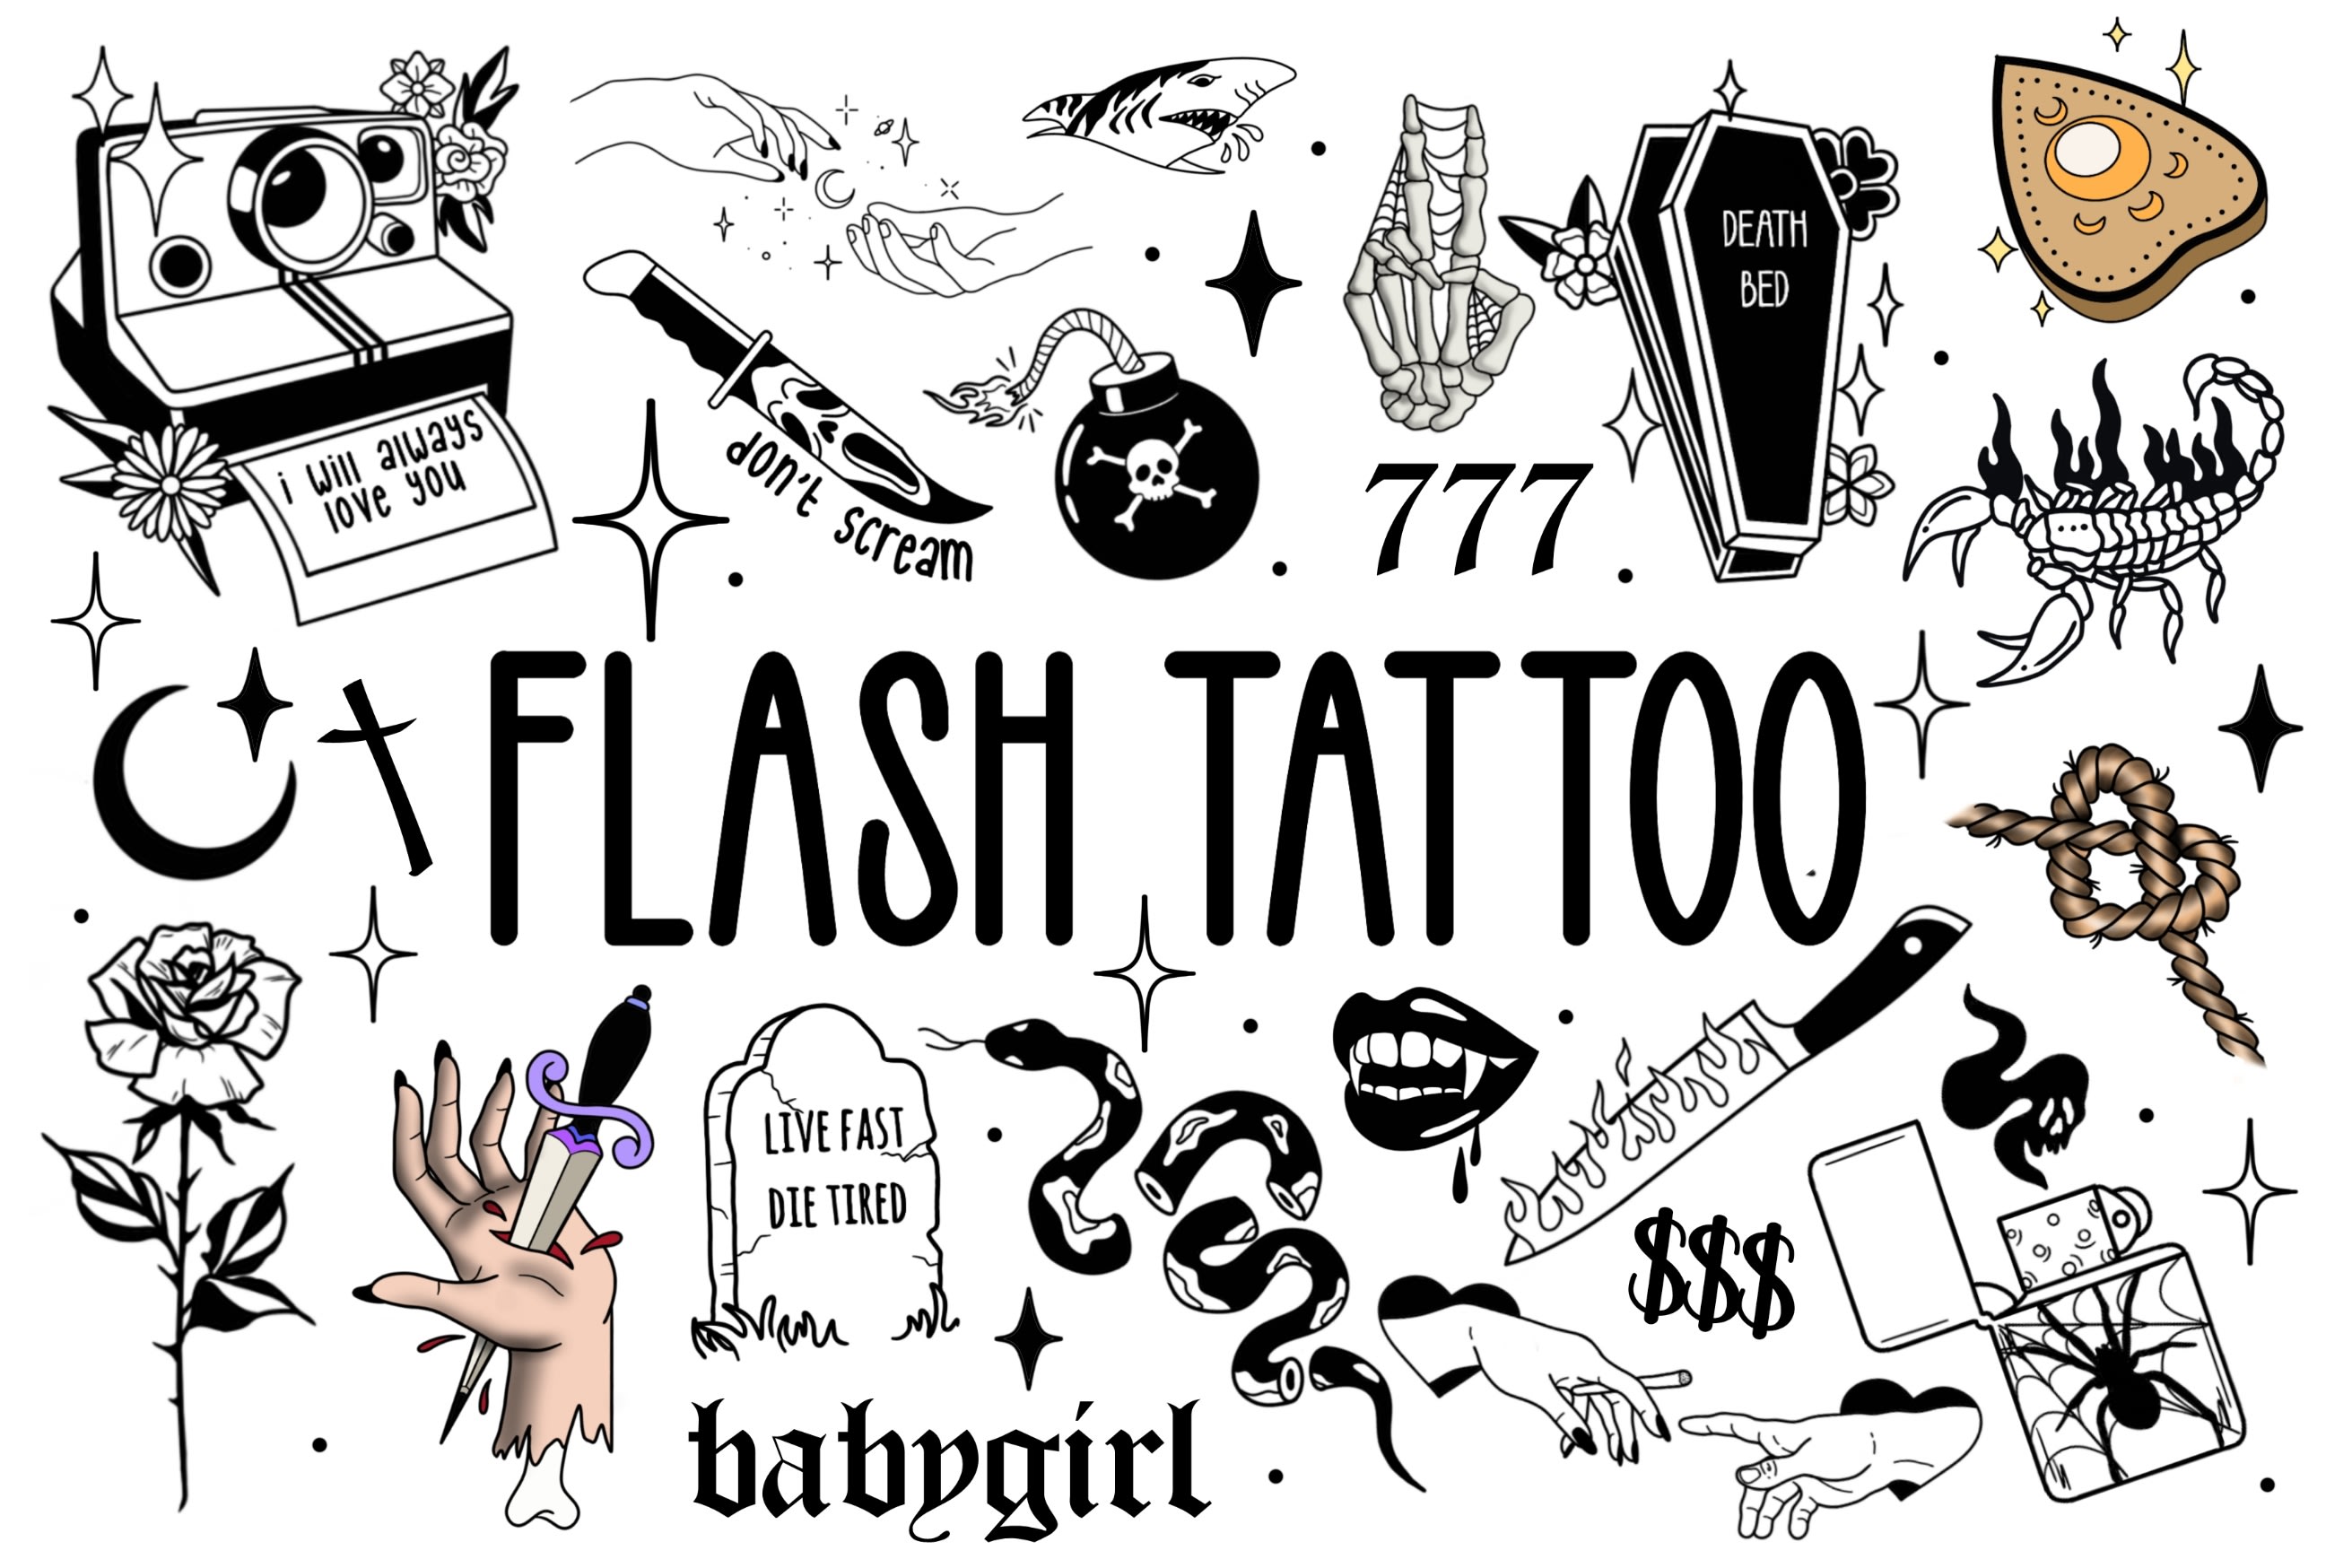 Flash Tattoo Books: The Art of the Flash Tattoo - wide 3